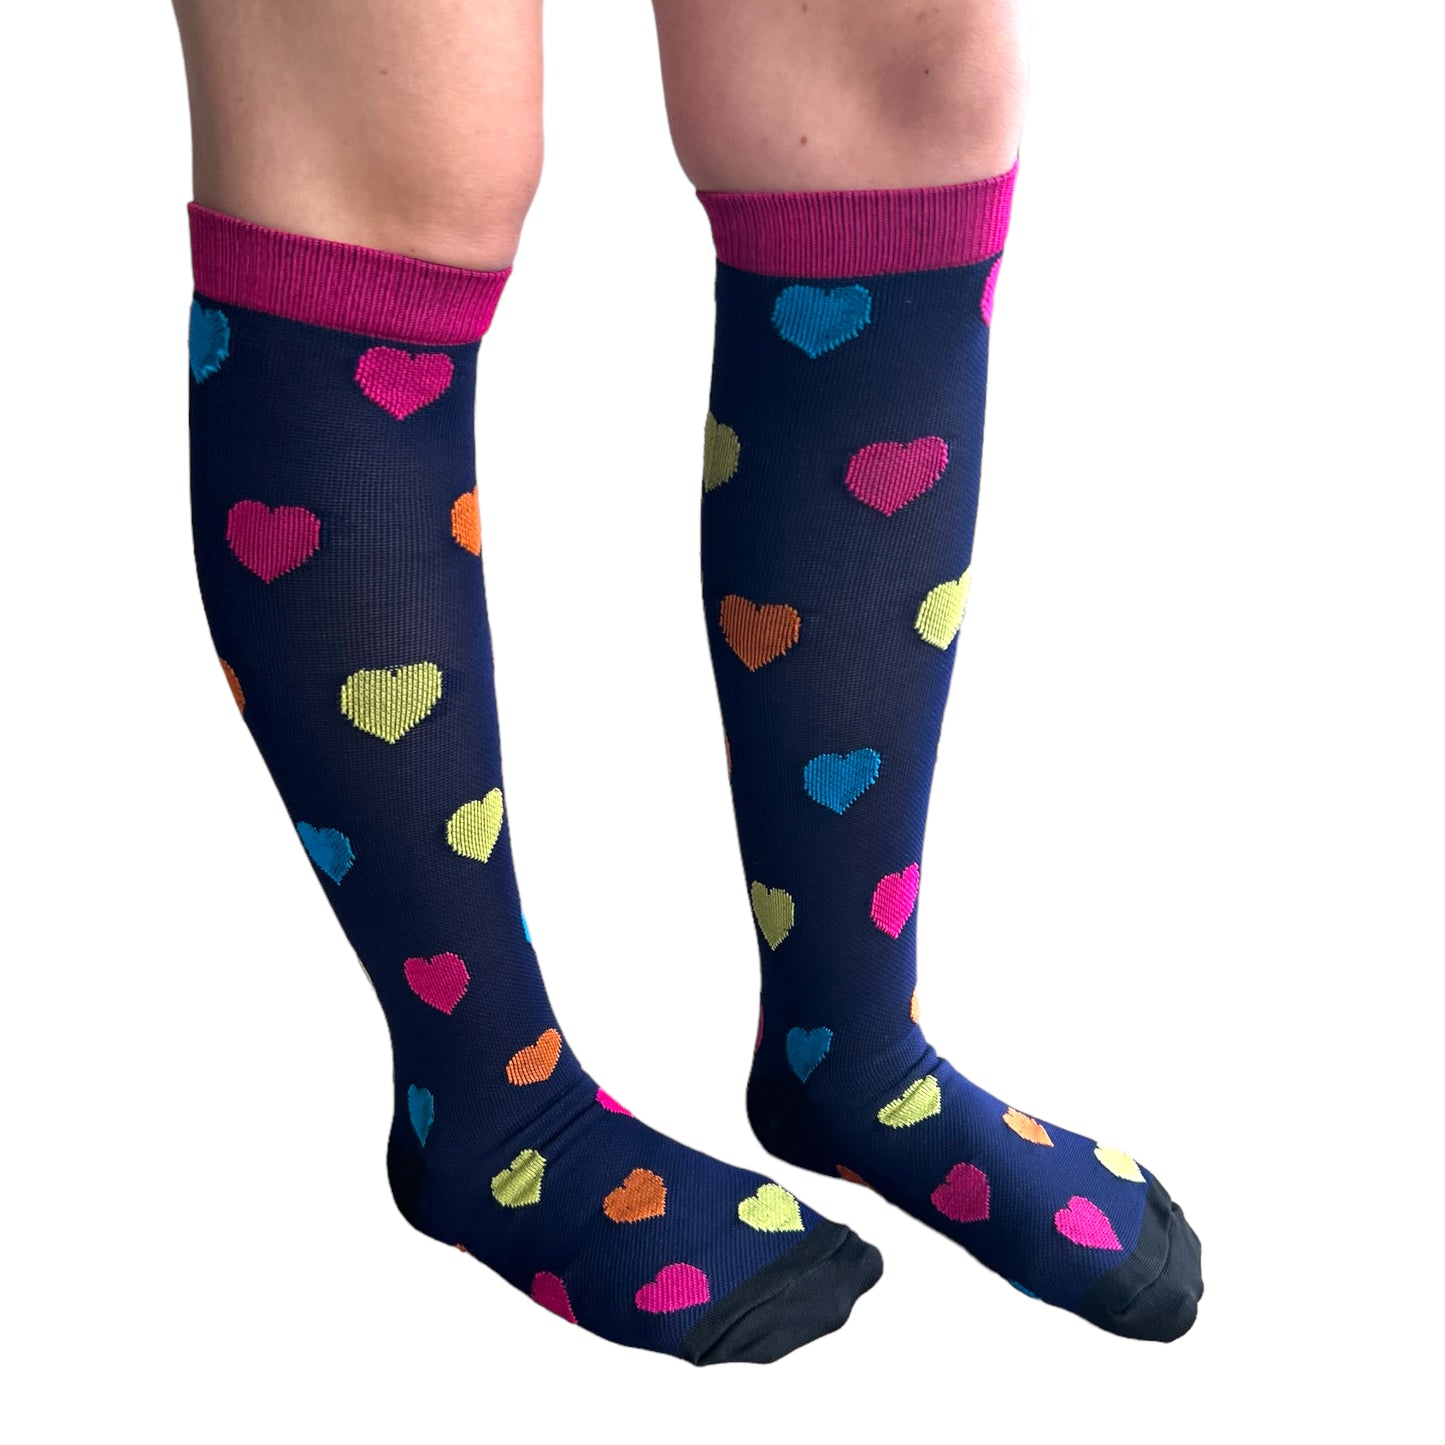 Nursing Compression Socks - Patterned